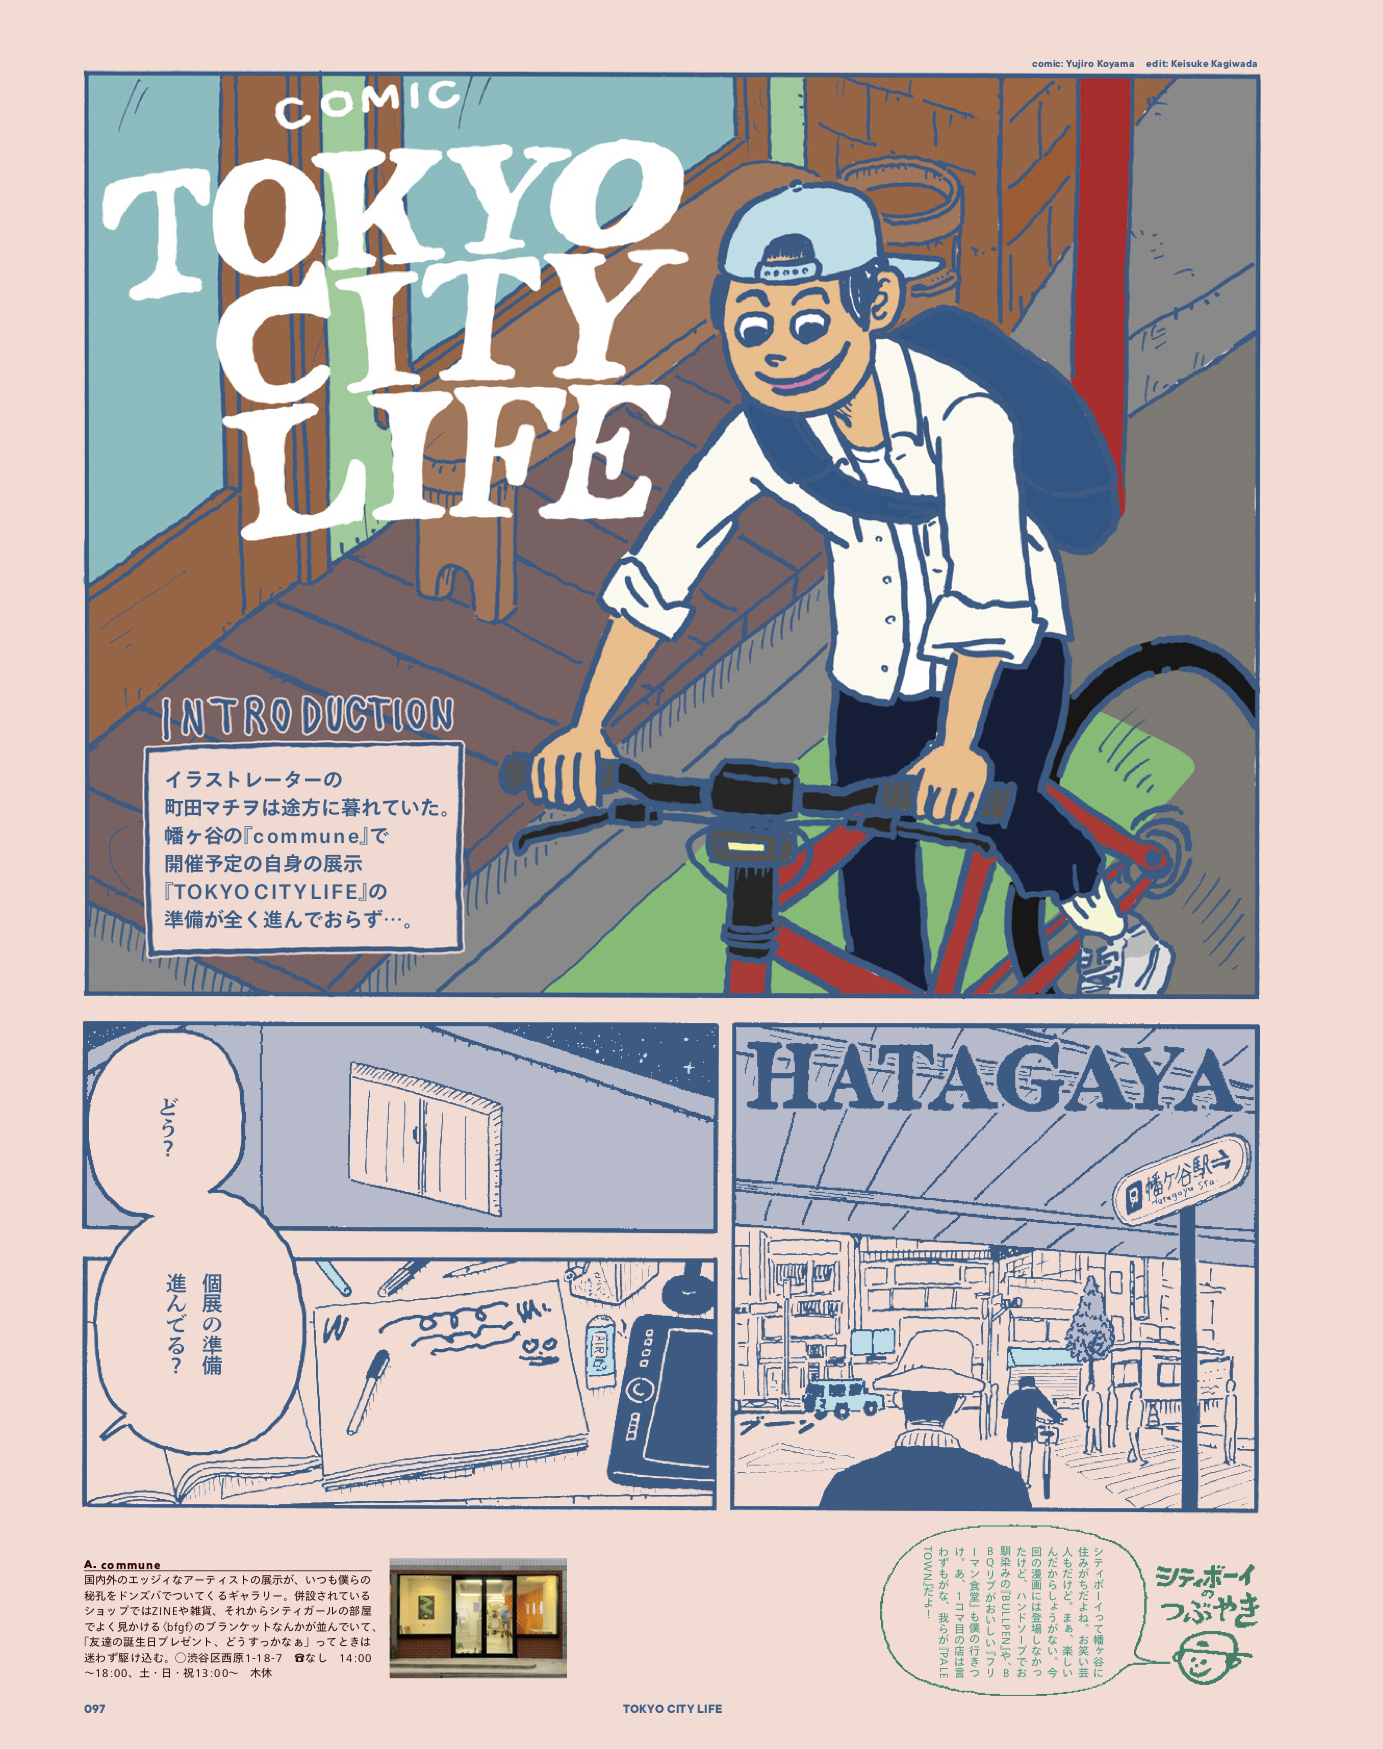 小山ゆうじろう先生によるシティボーイのためのマンガ『comic TOKYO CITY LIFE』